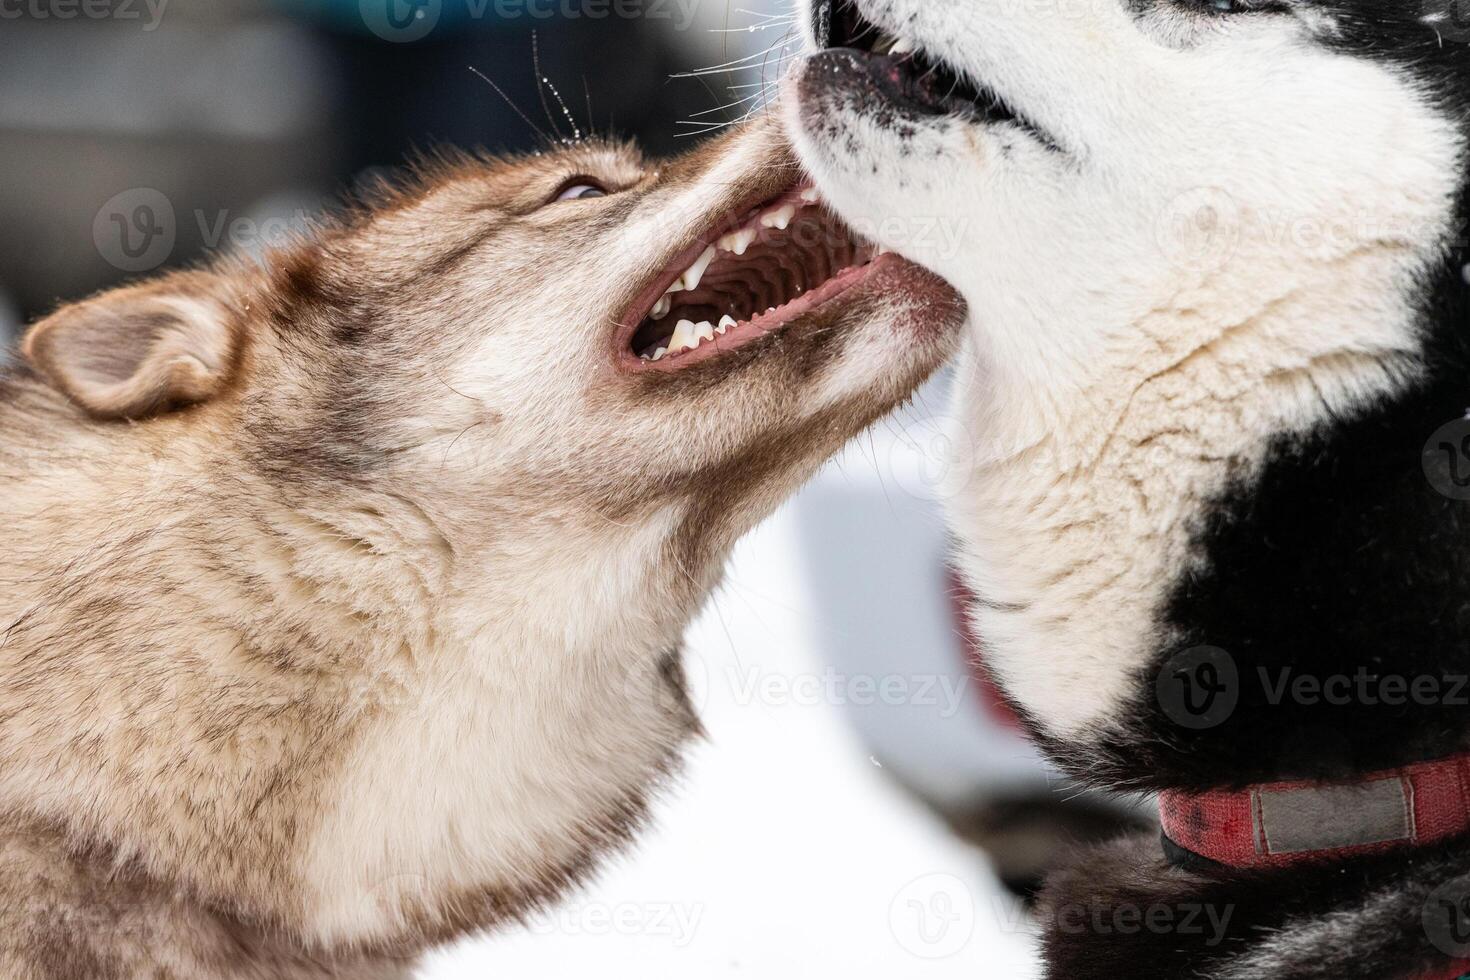 los perros husky ladran, muerden y juegan en la nieve. divertido juego de invierno de perros de trineo. sonrisa agresiva del husky siberiano. foto